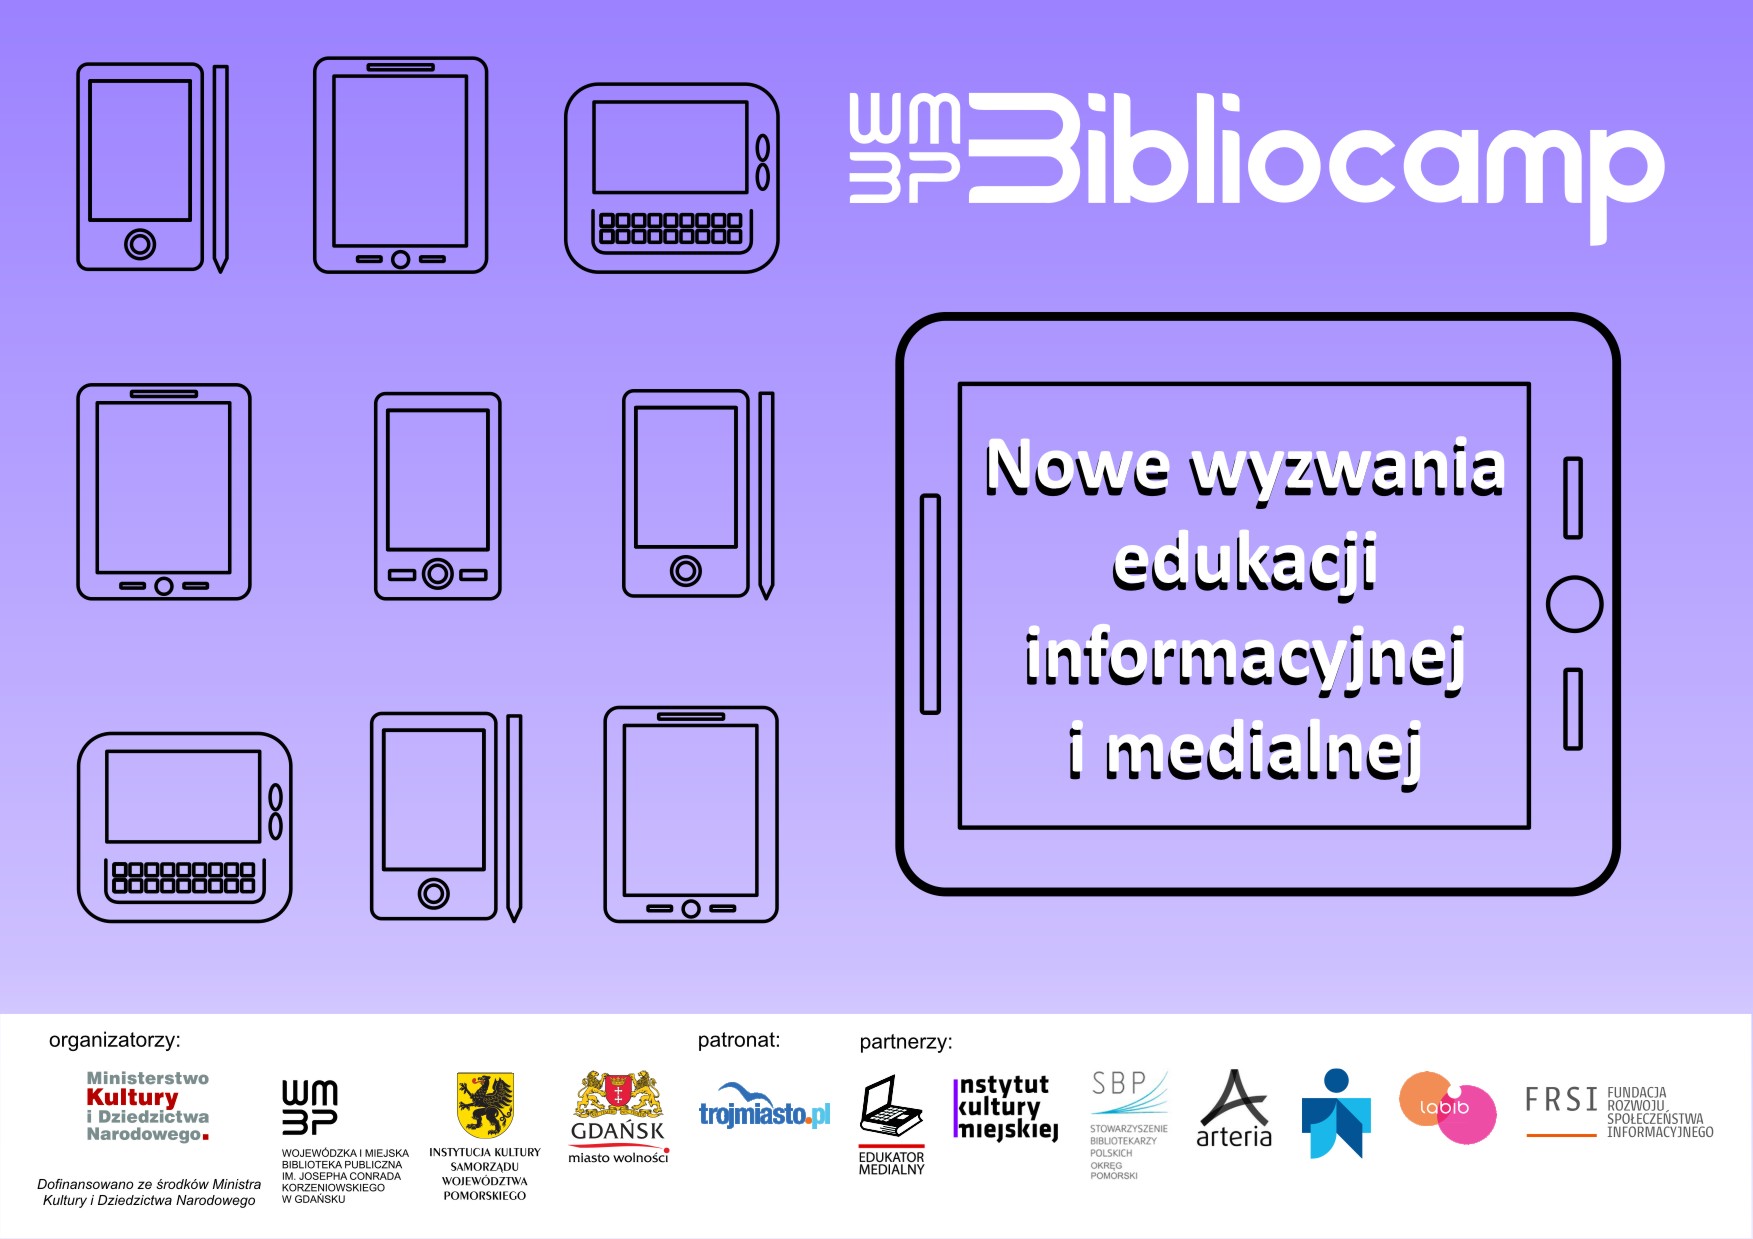 Nowe wyzwania edukacji informacyjnej i medialnej - zaproszenie do udziału w #bibliocampie